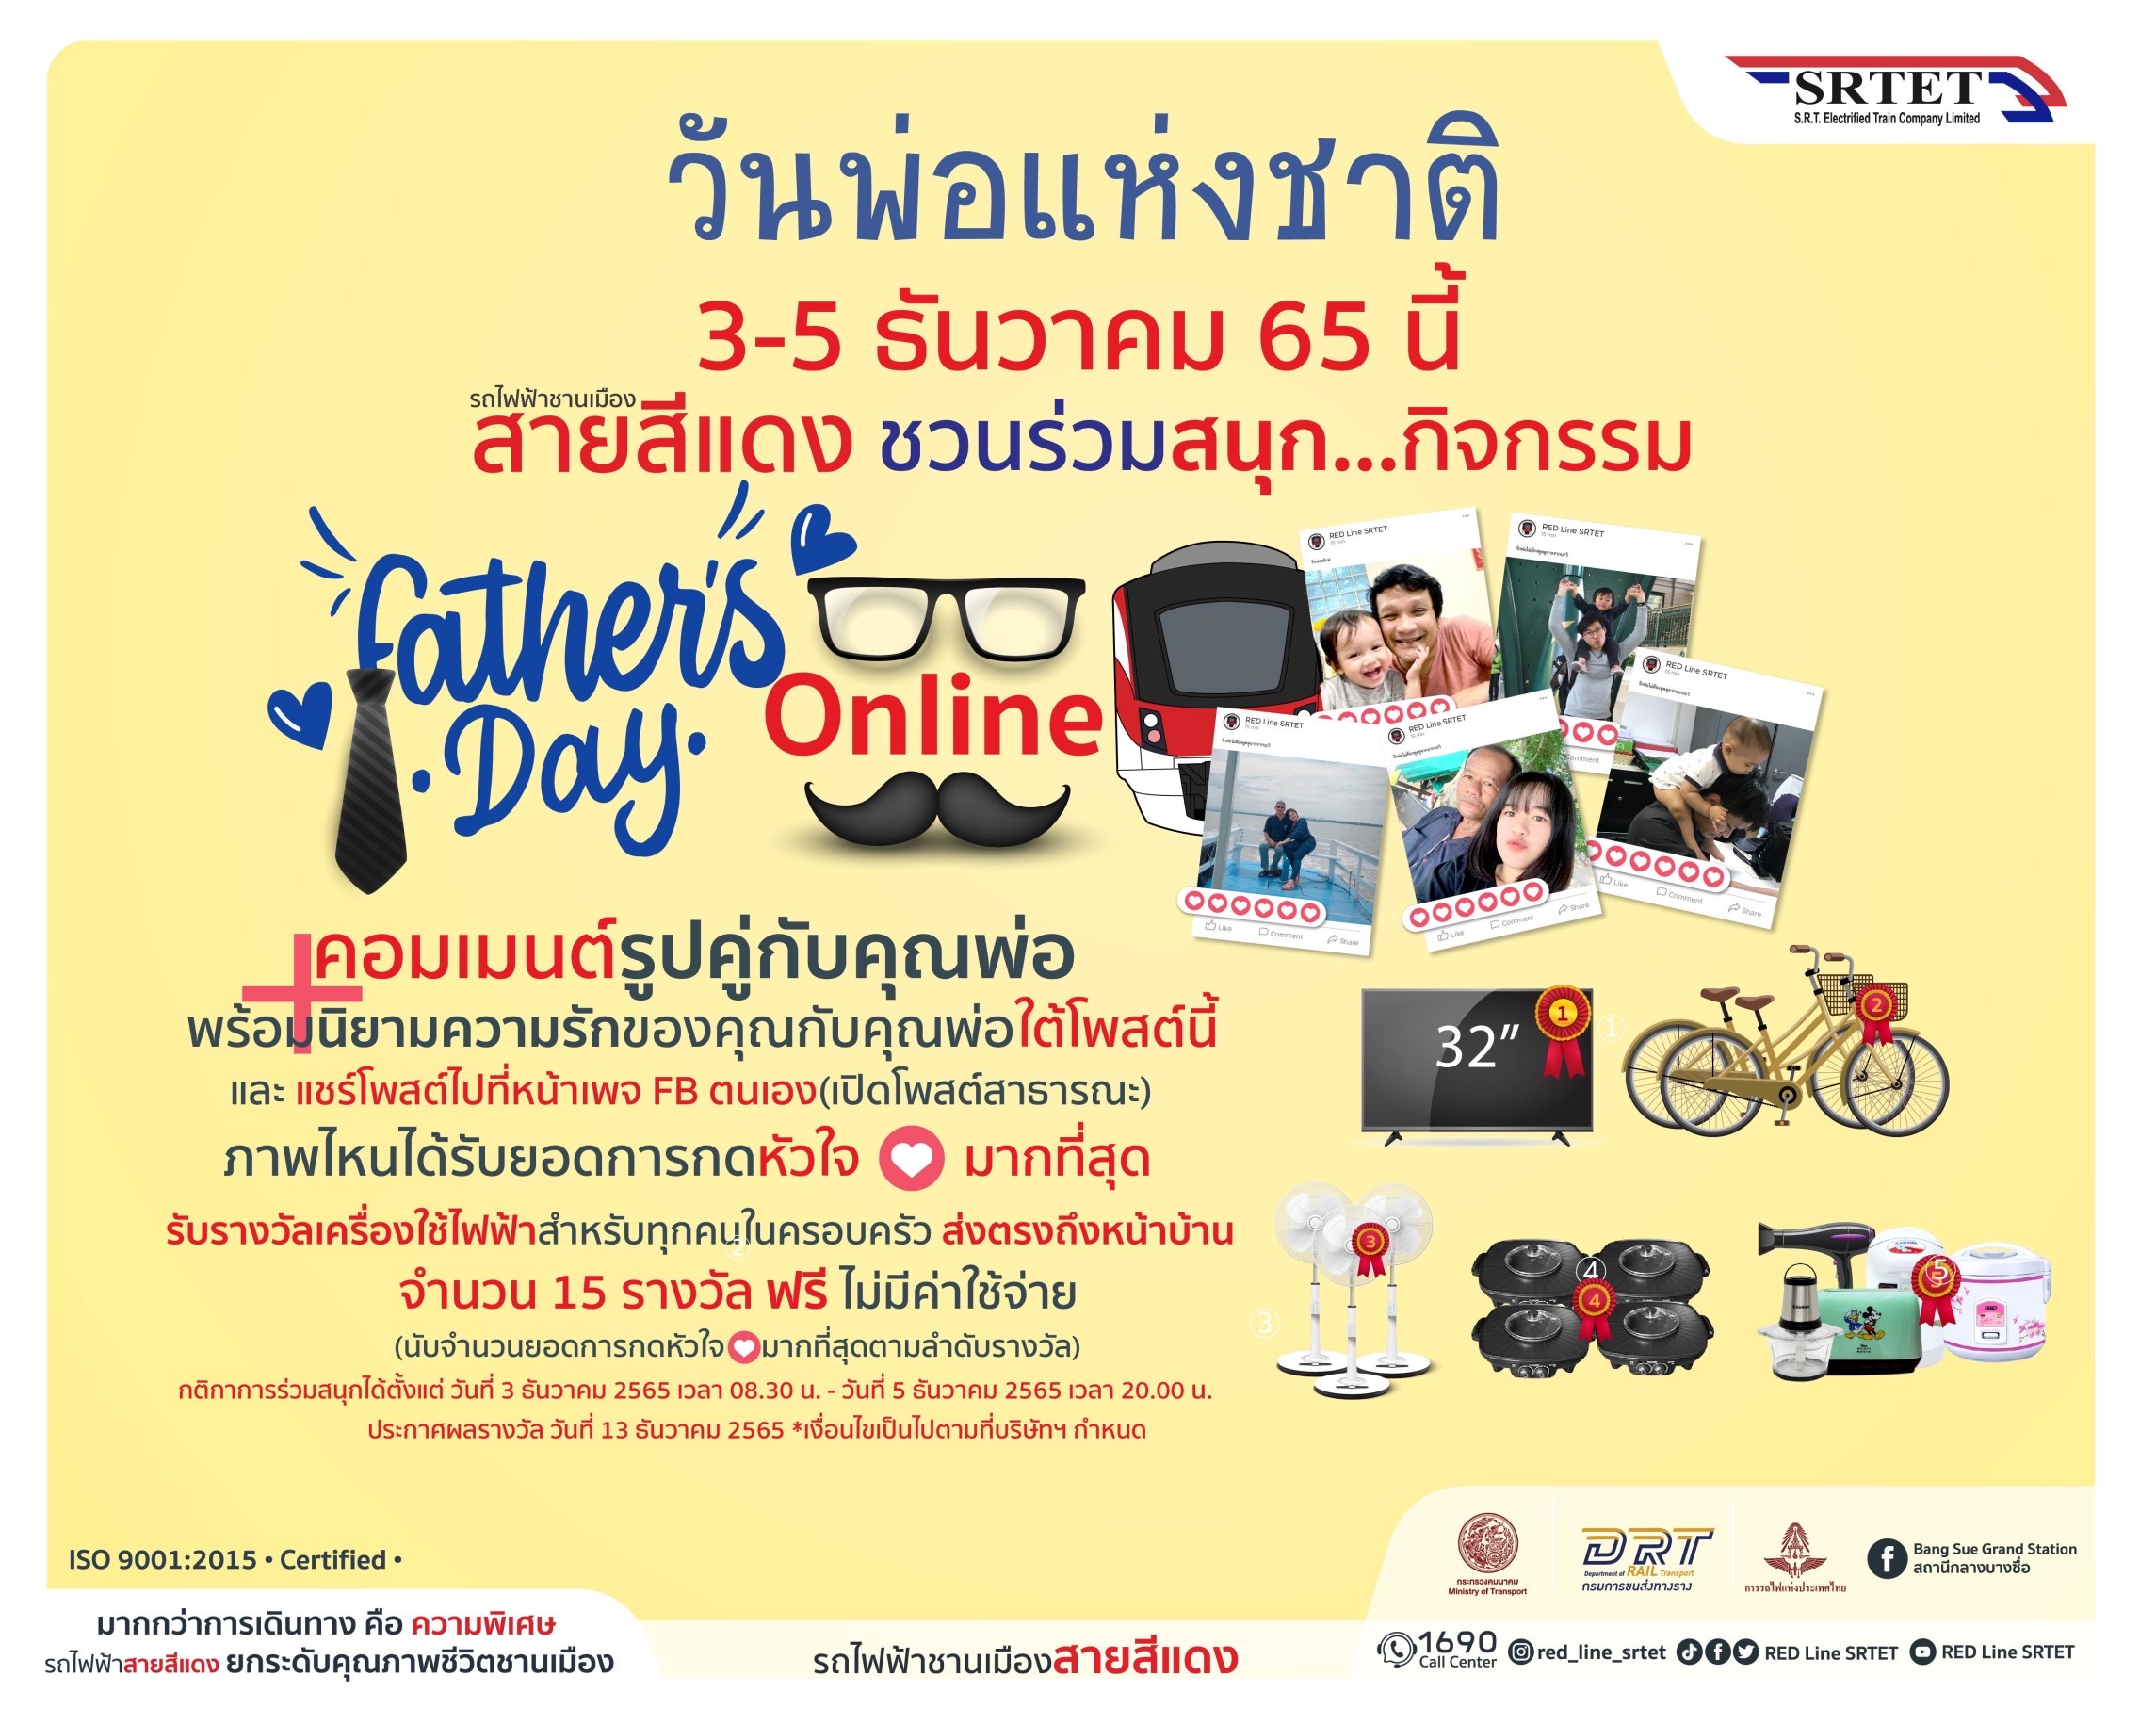 รฟฟท.จัดกิจกรรมพิเศษ Father’s Day ในรูปแบบ Online ต้อนรับ “วันพ่อแห่งชาติ”